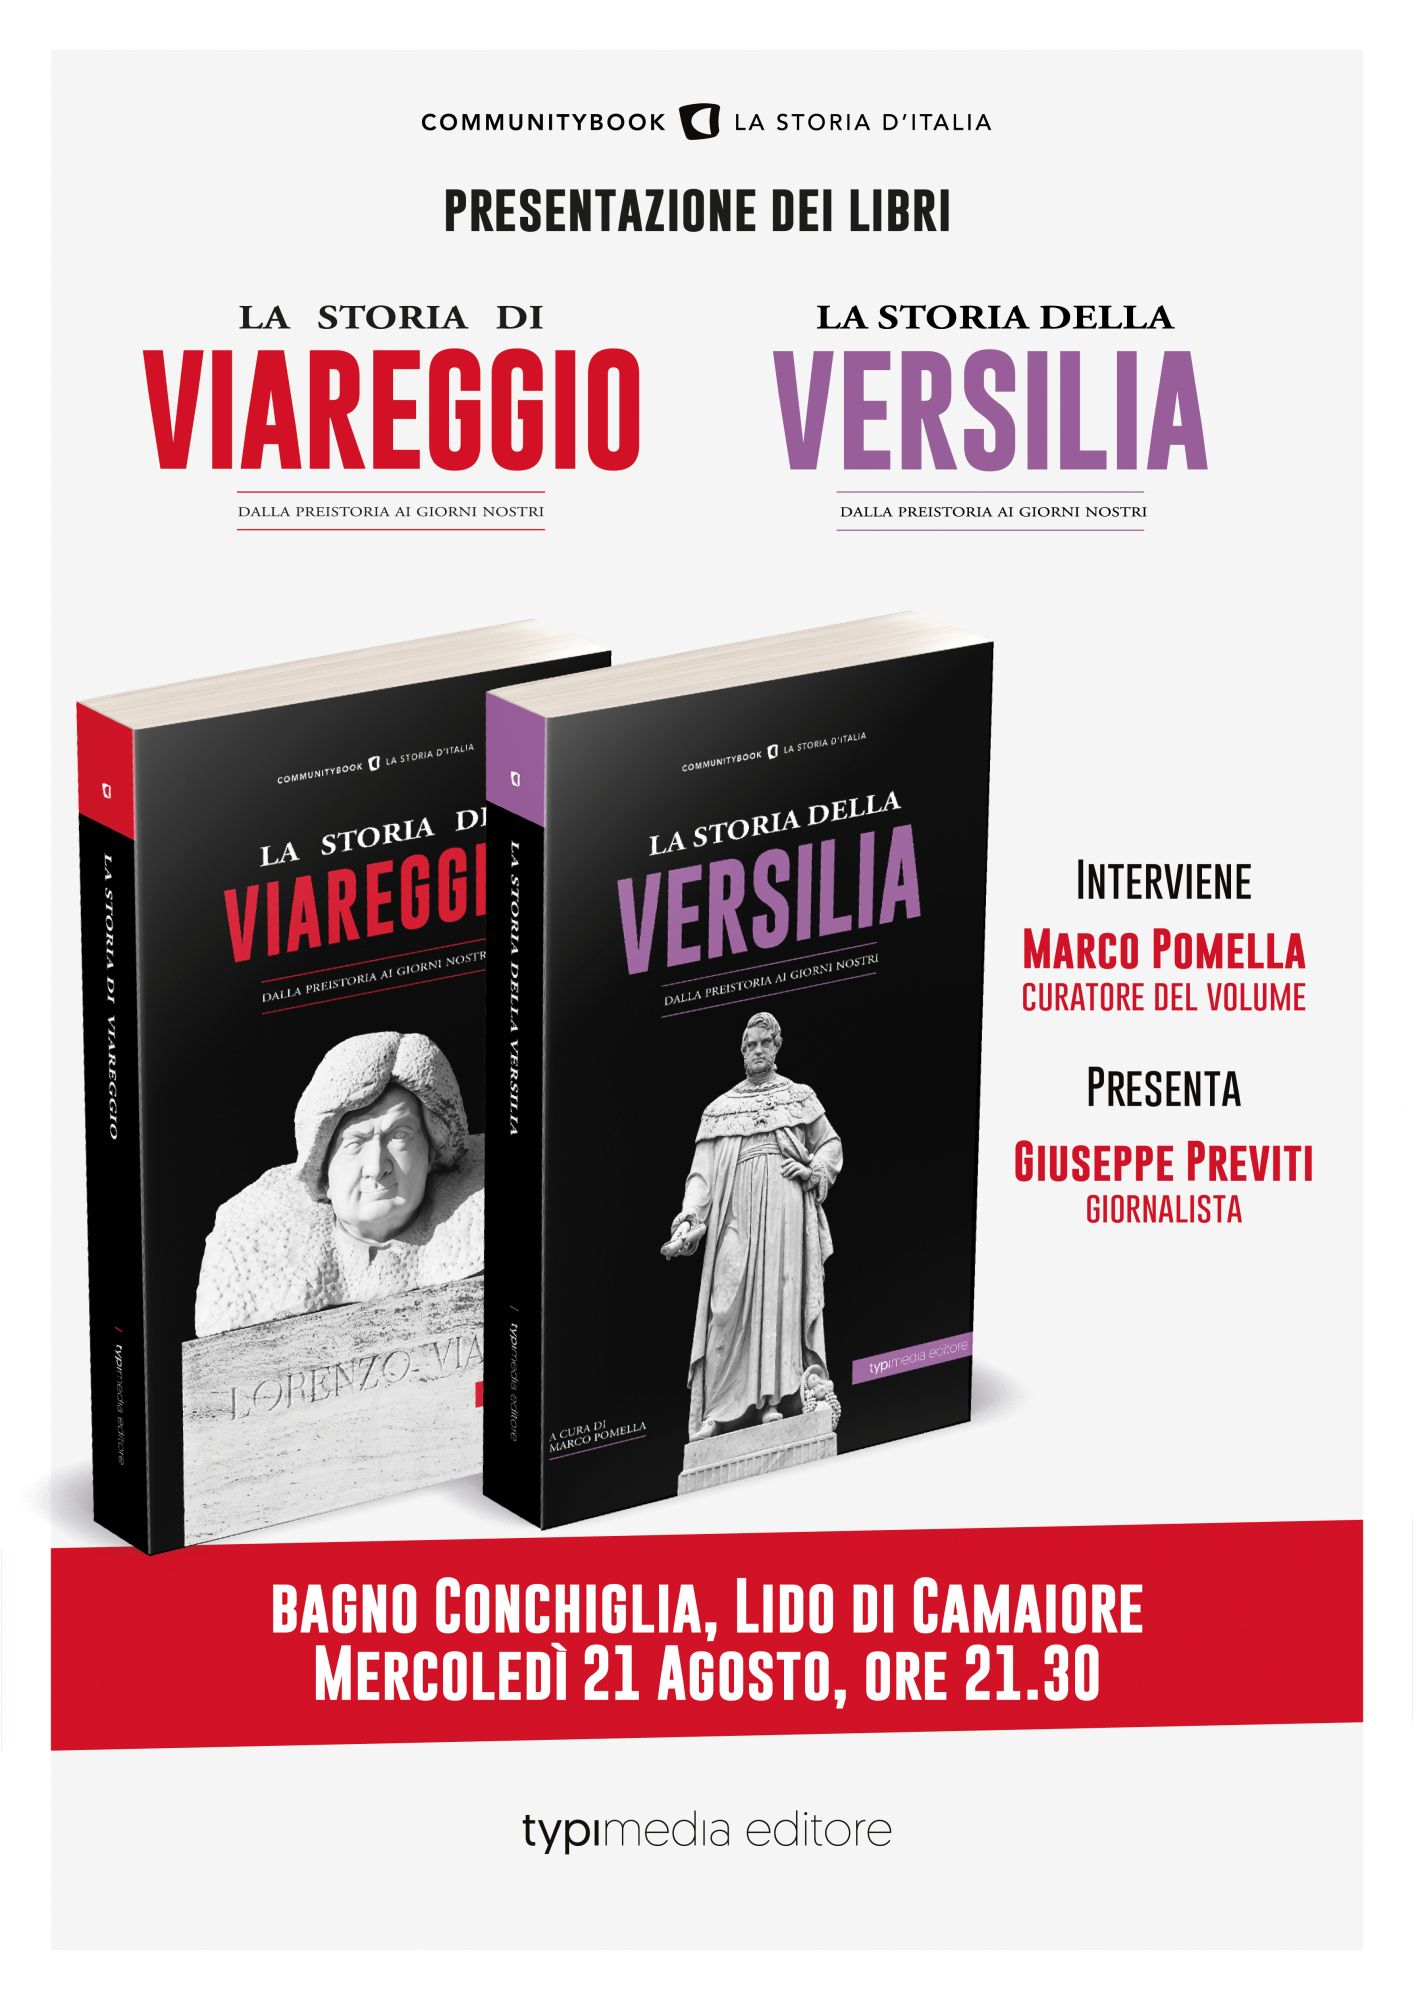 Al bagno Conchiglia si racconta la storia di Viareggio e della Versilia